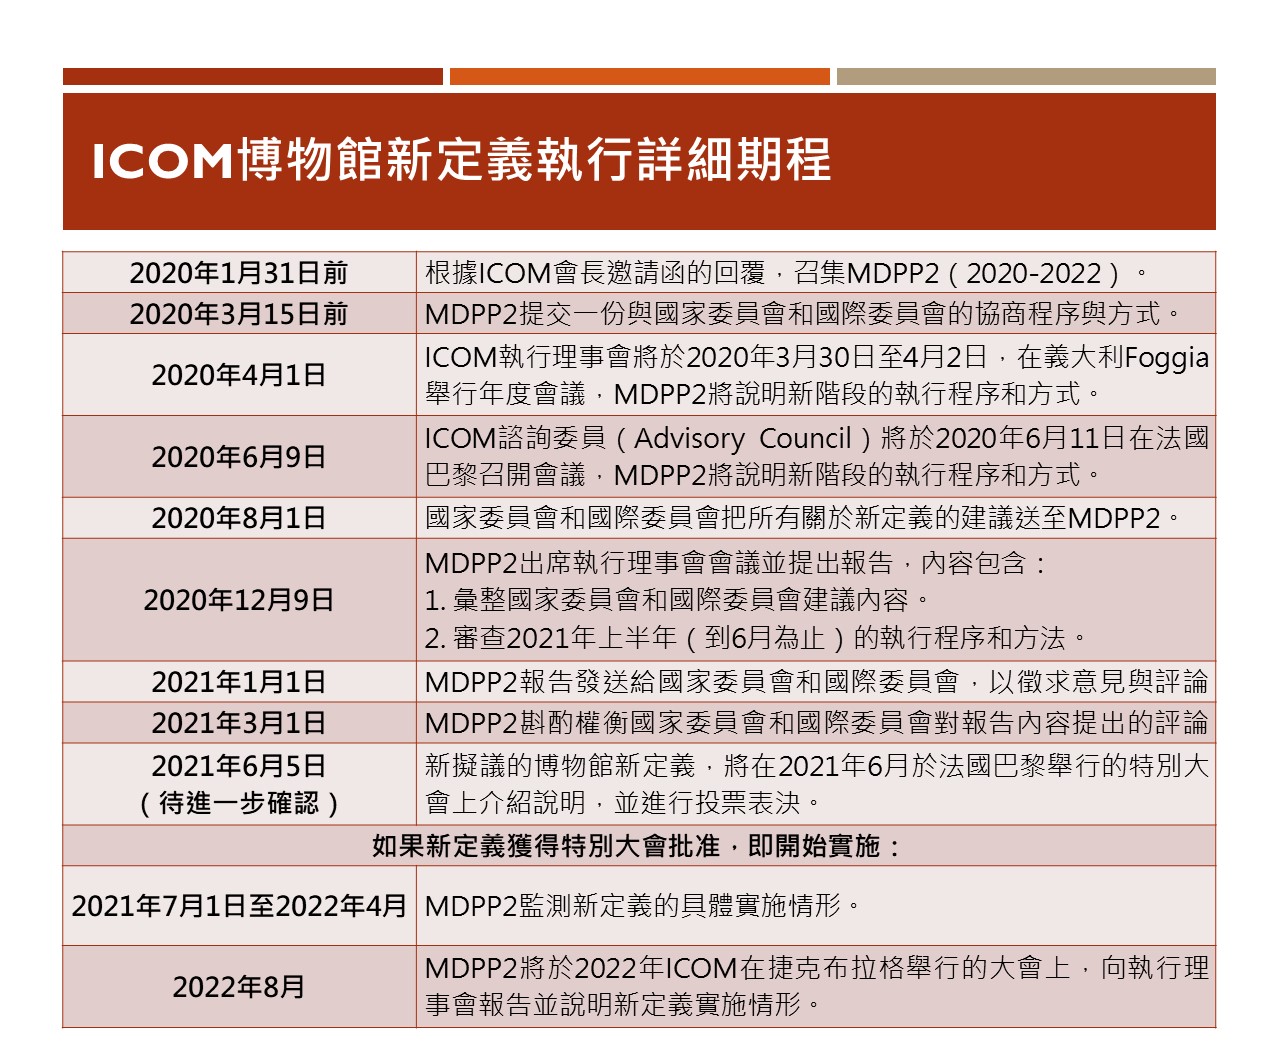 ICOM博物館新定義執行詳細期程